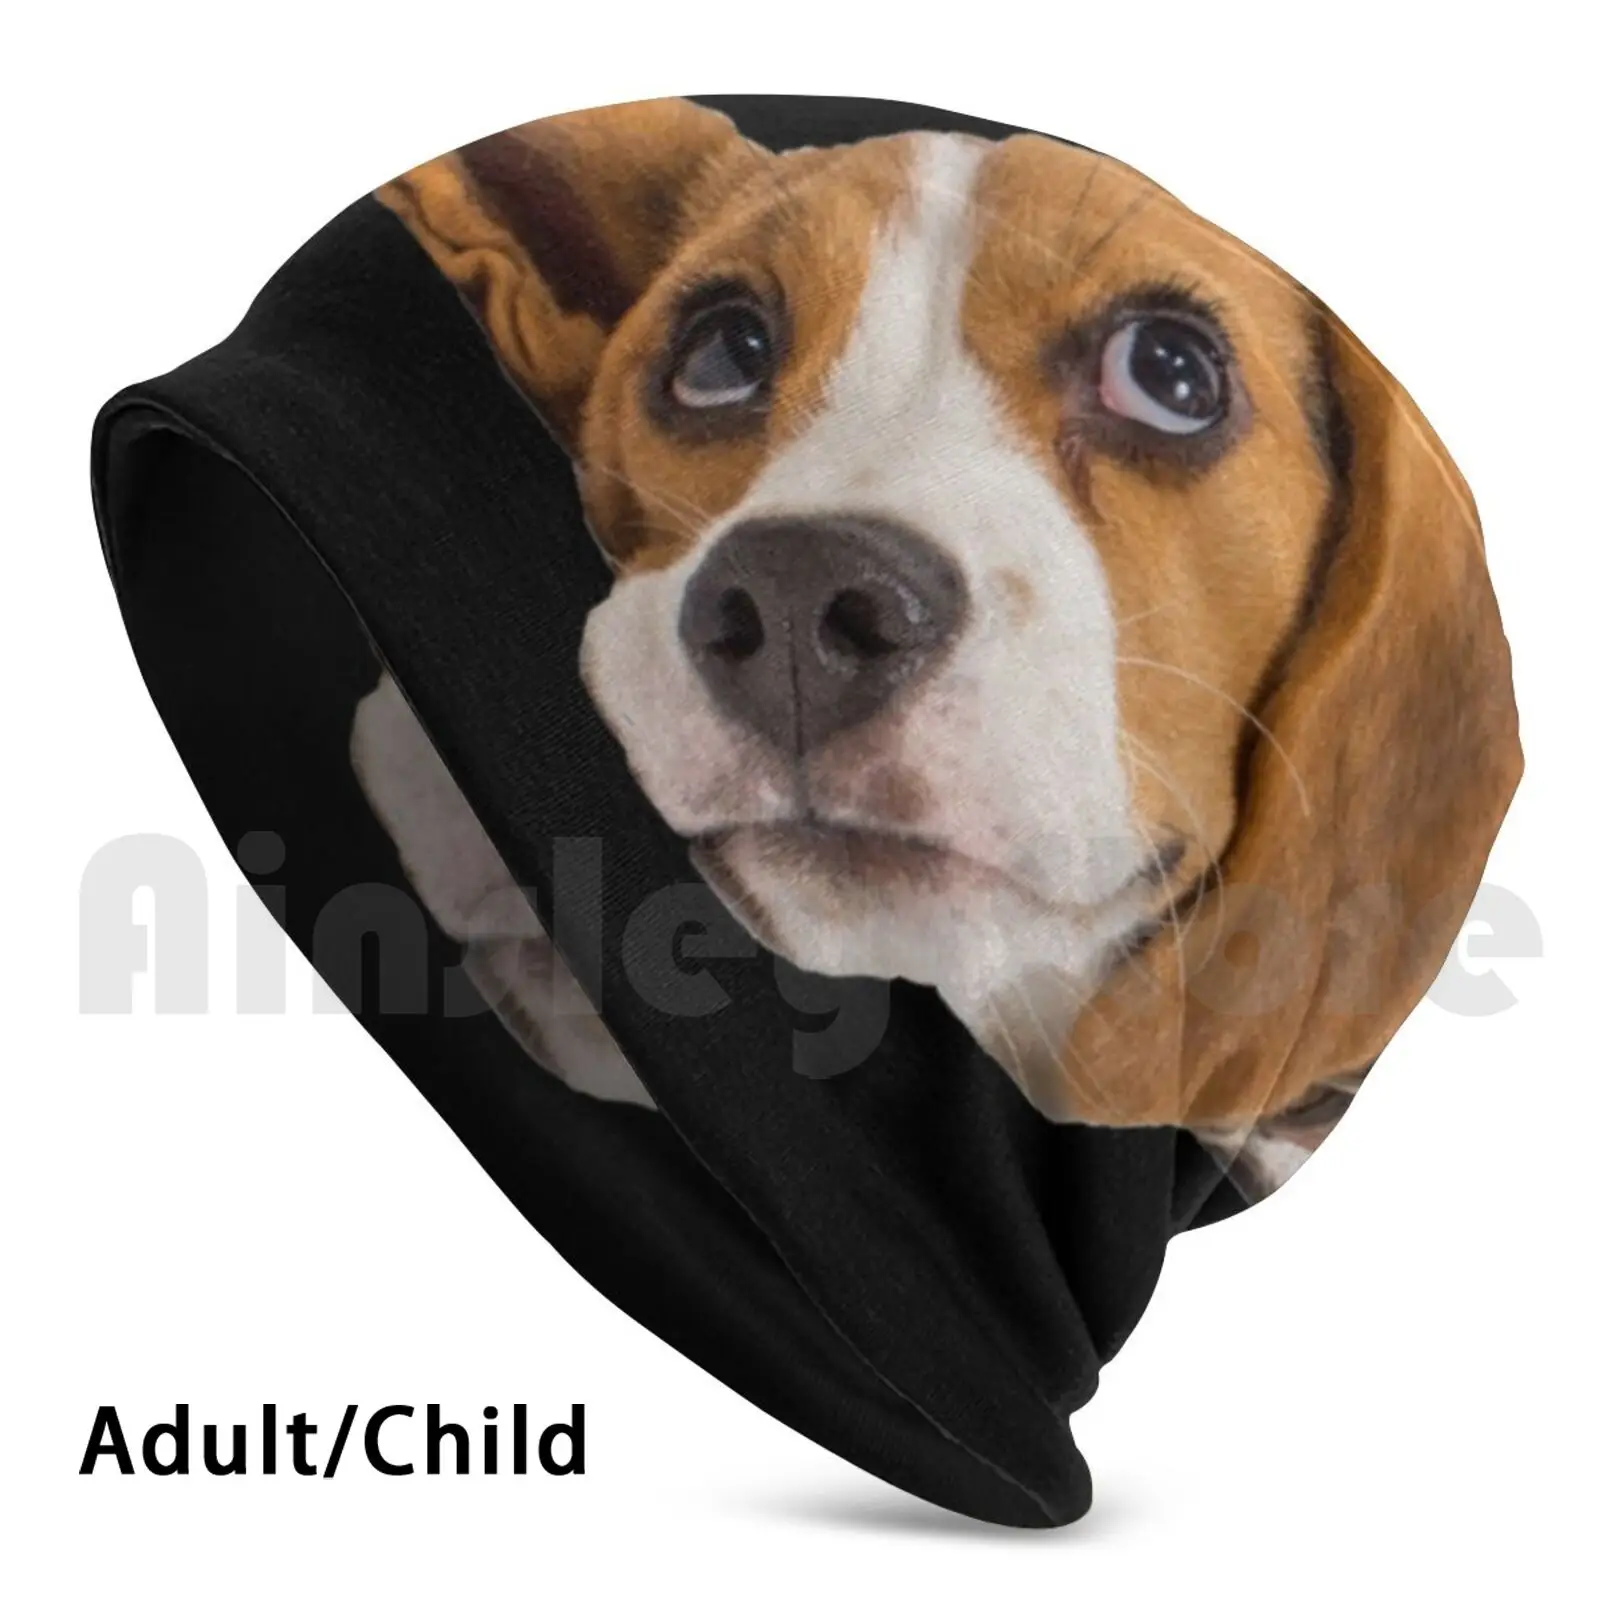 

Beagle щенок шапочки пуловер Кепка Удобная Бигль Щенок собака собаки домашнее животное немецкая овчарка пудель щенки Бульдог